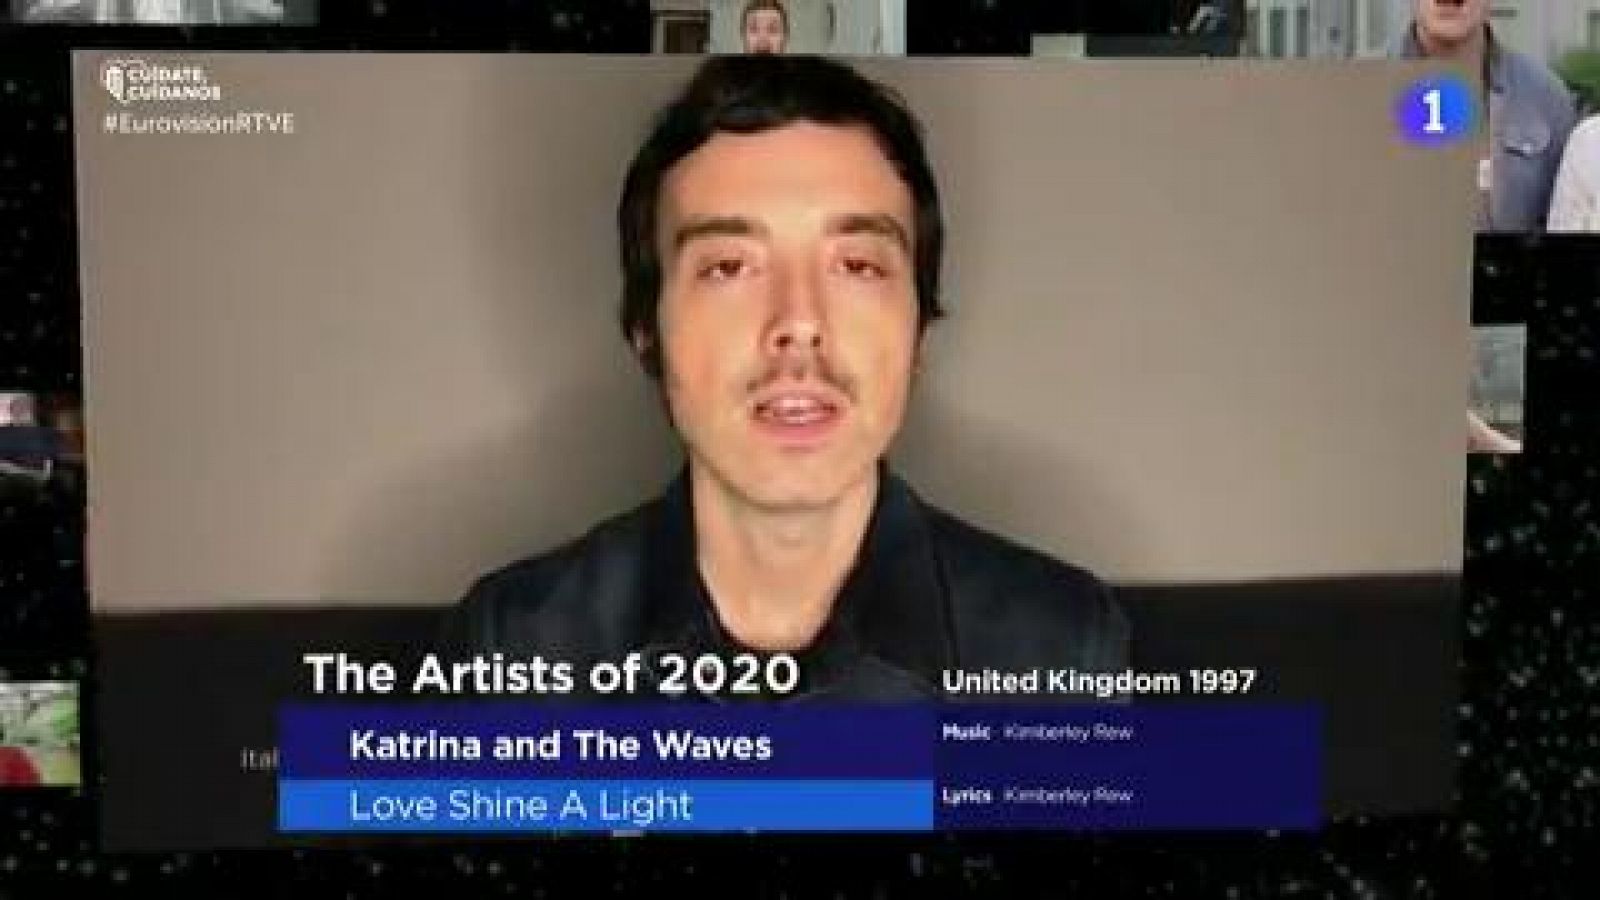 Los candidatos de Eurovisión 2020 cantan "Love shine a light"